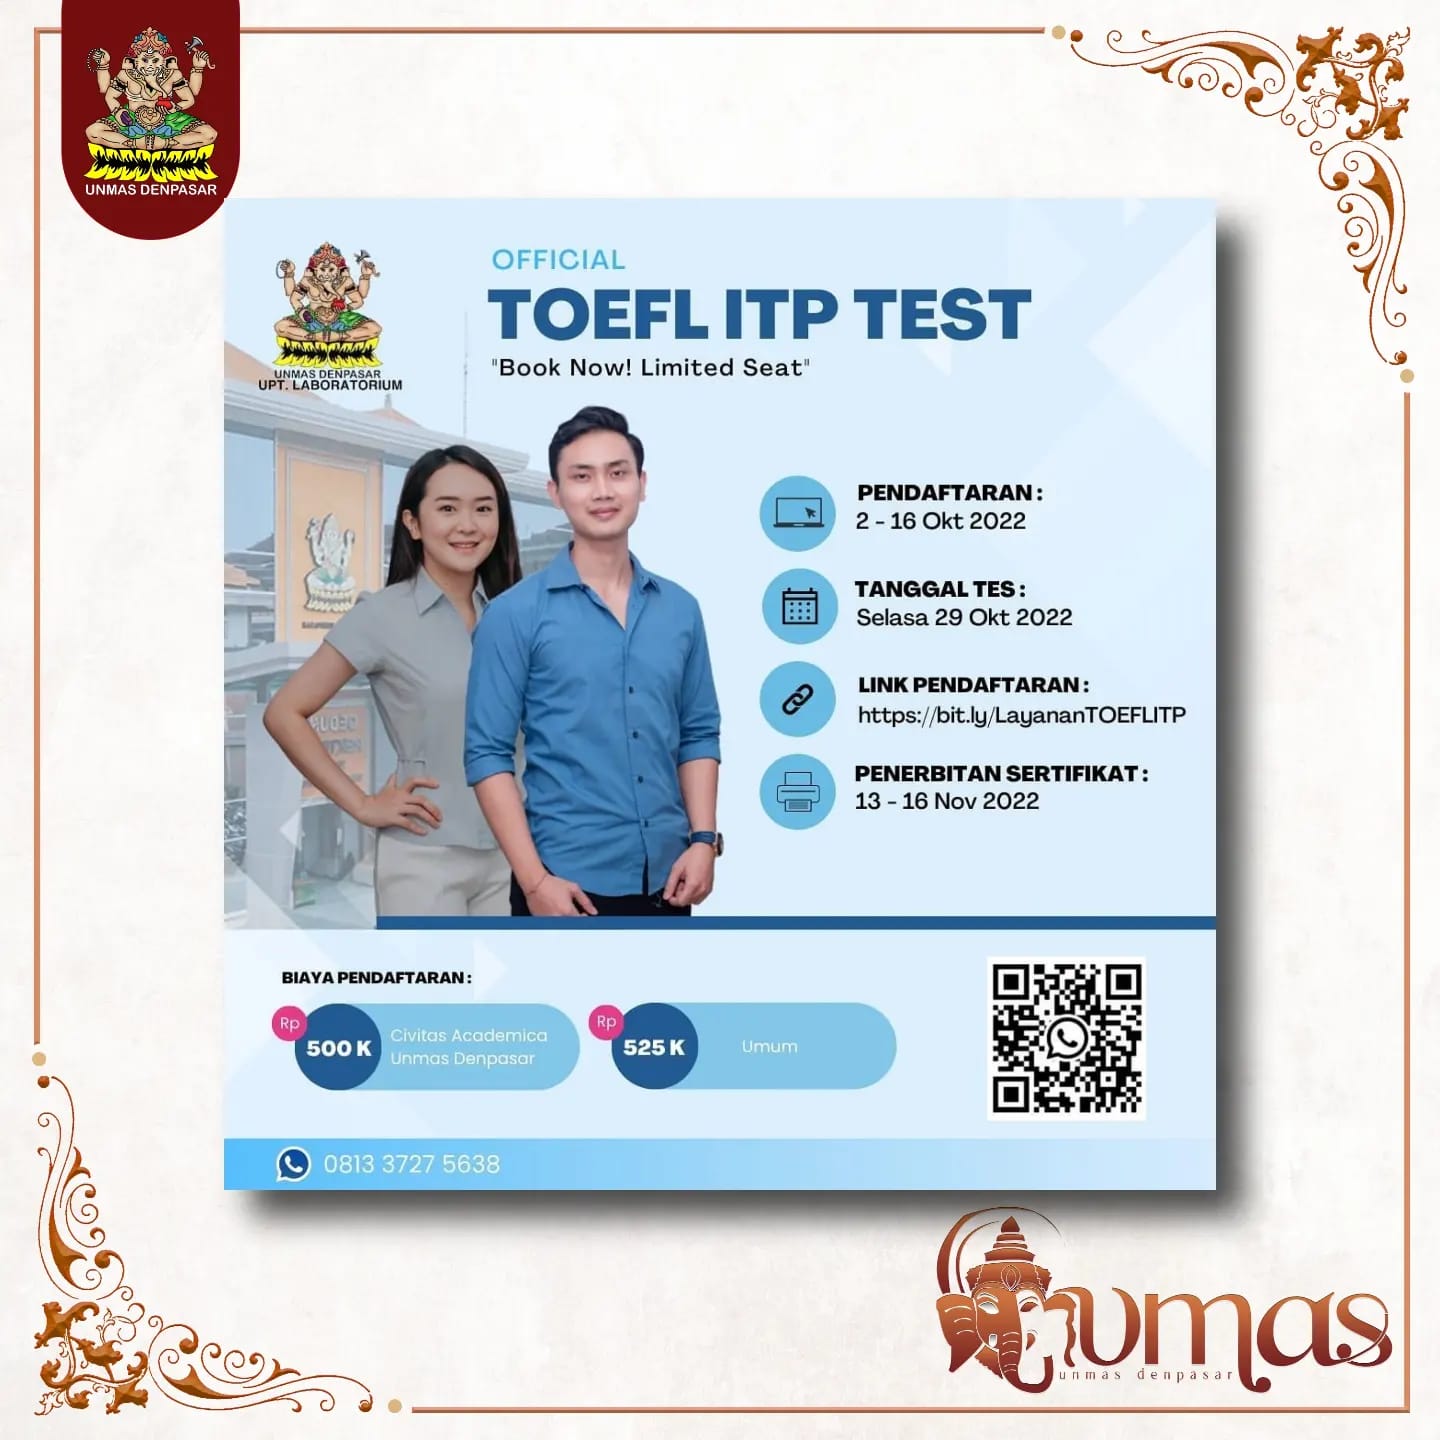 toefl-itp-test-periode-29-oktober